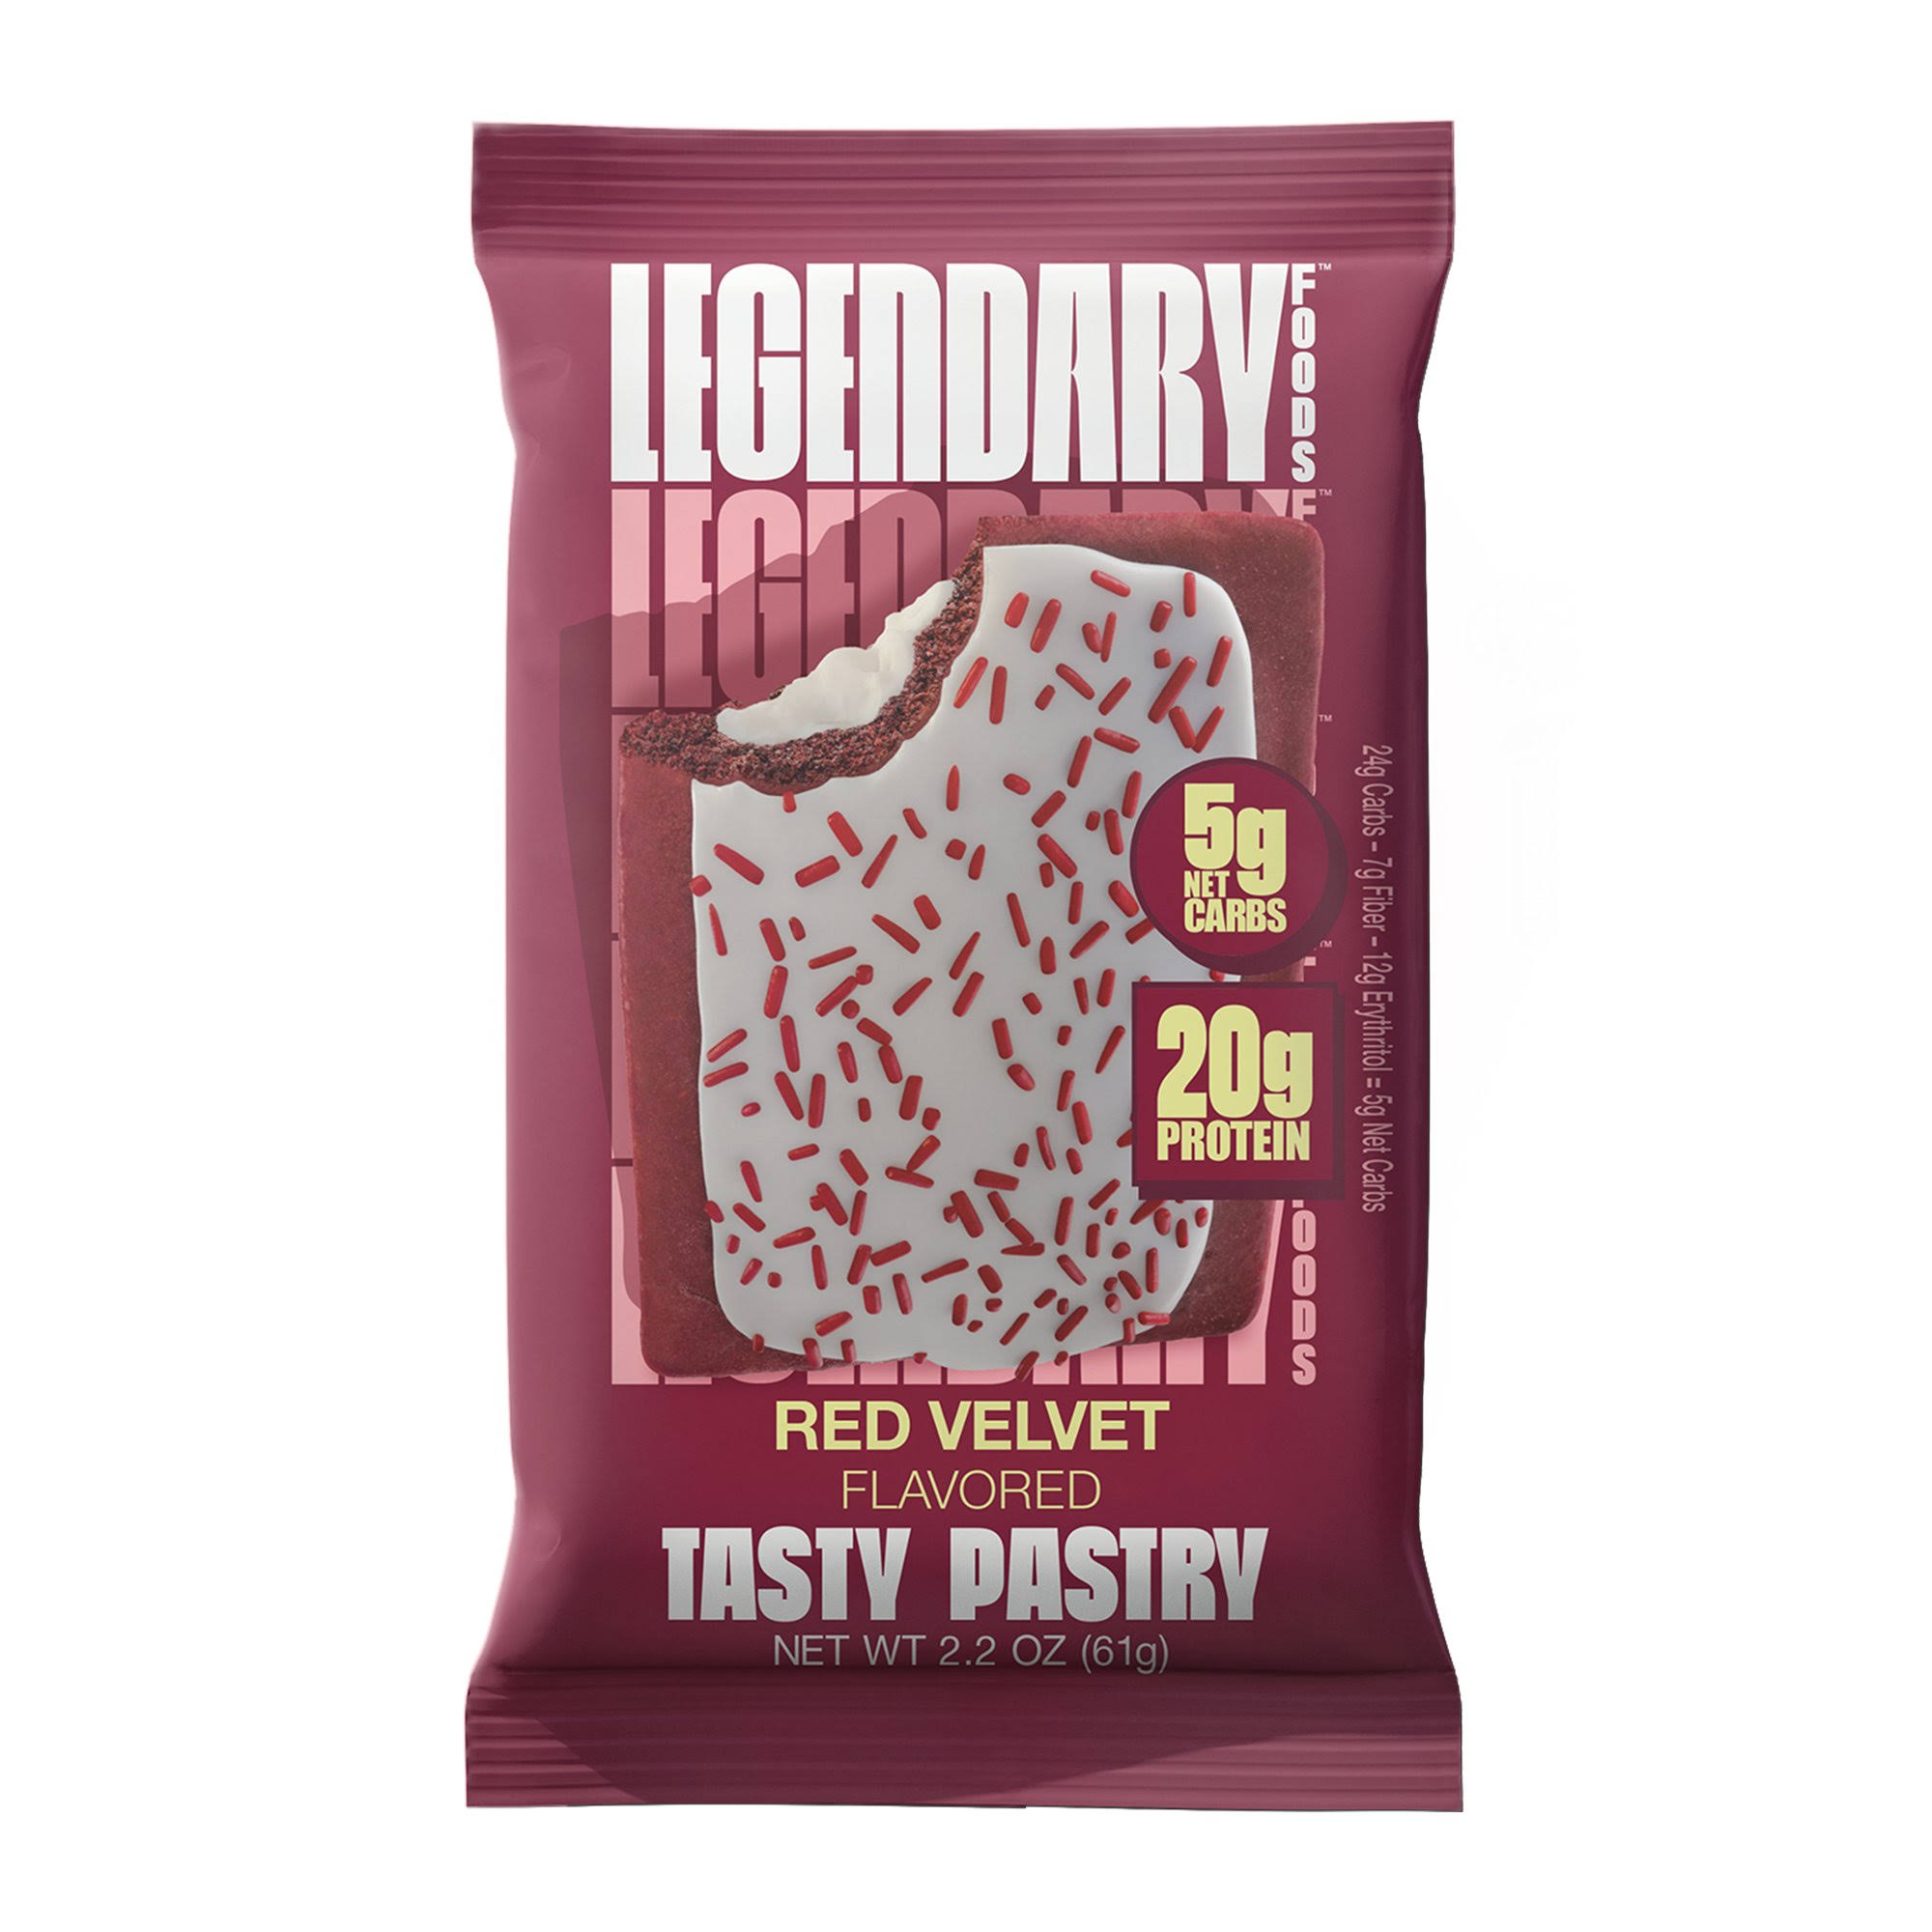 Legendary Foods Tasty Pastry, Red Velvet Flavored - 2.2 oz